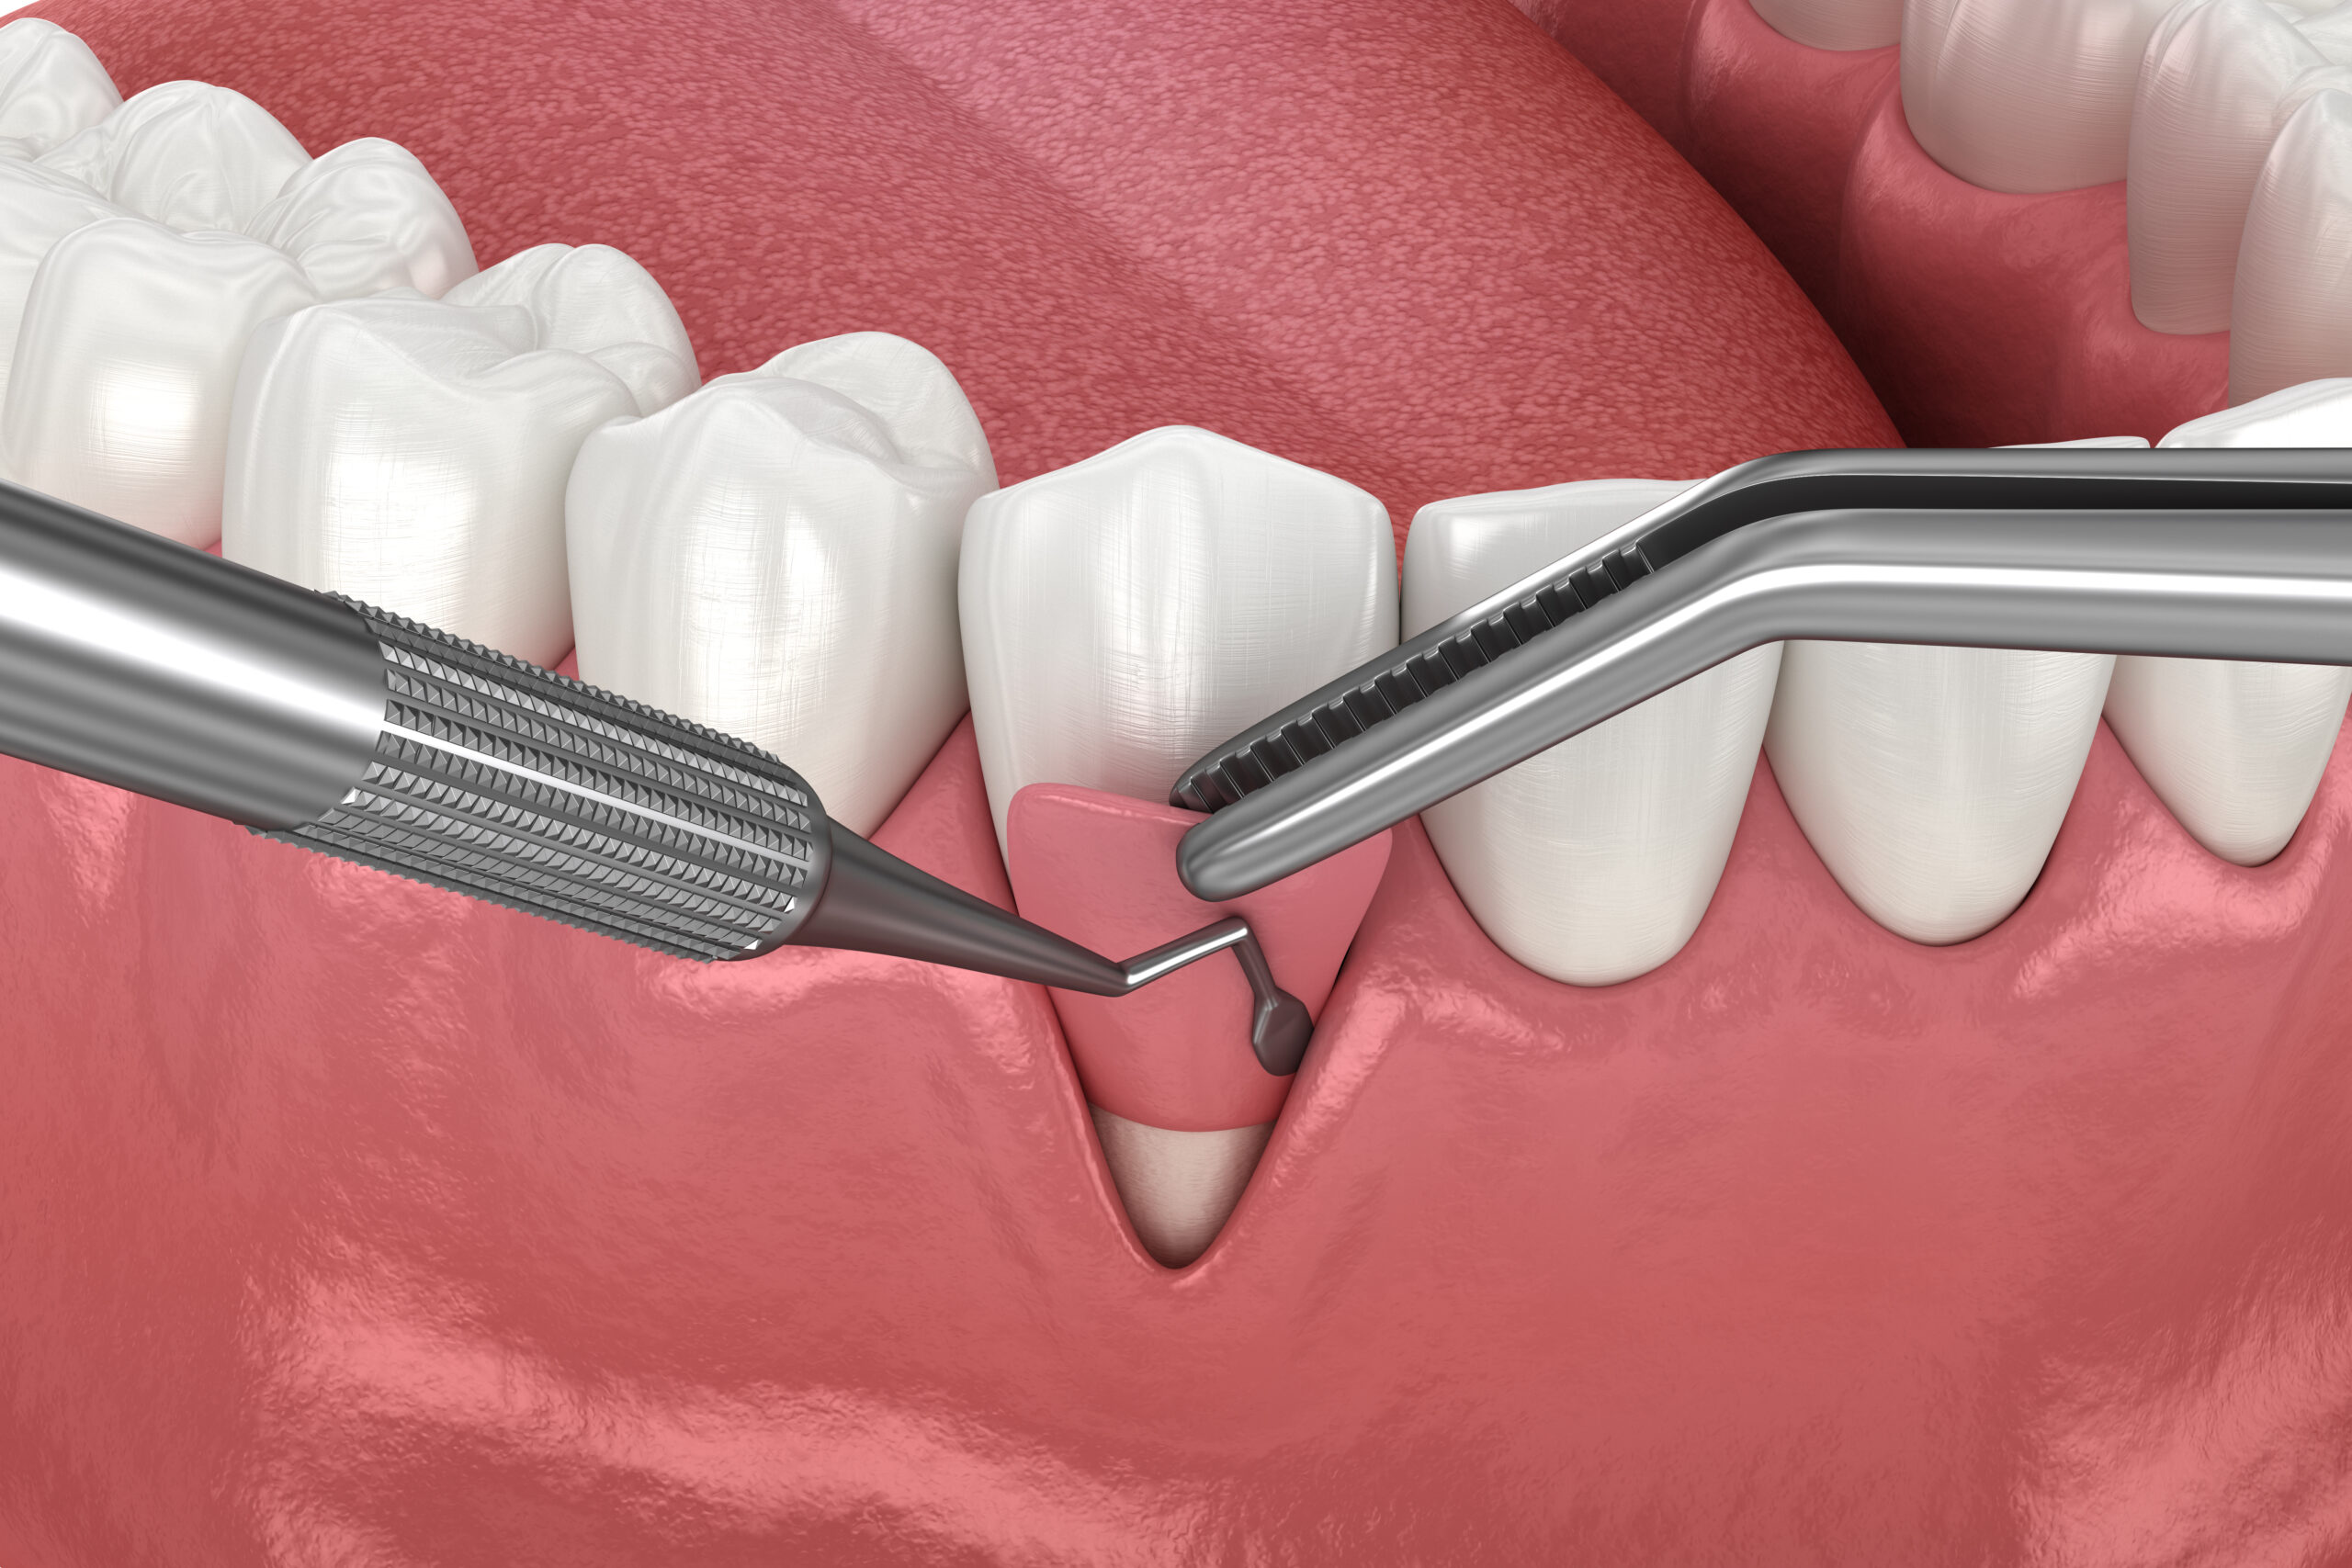 Récession gingivale : Chirurgie de greffe de tissus mous. Illustration 3D d'un traitement dentaire.